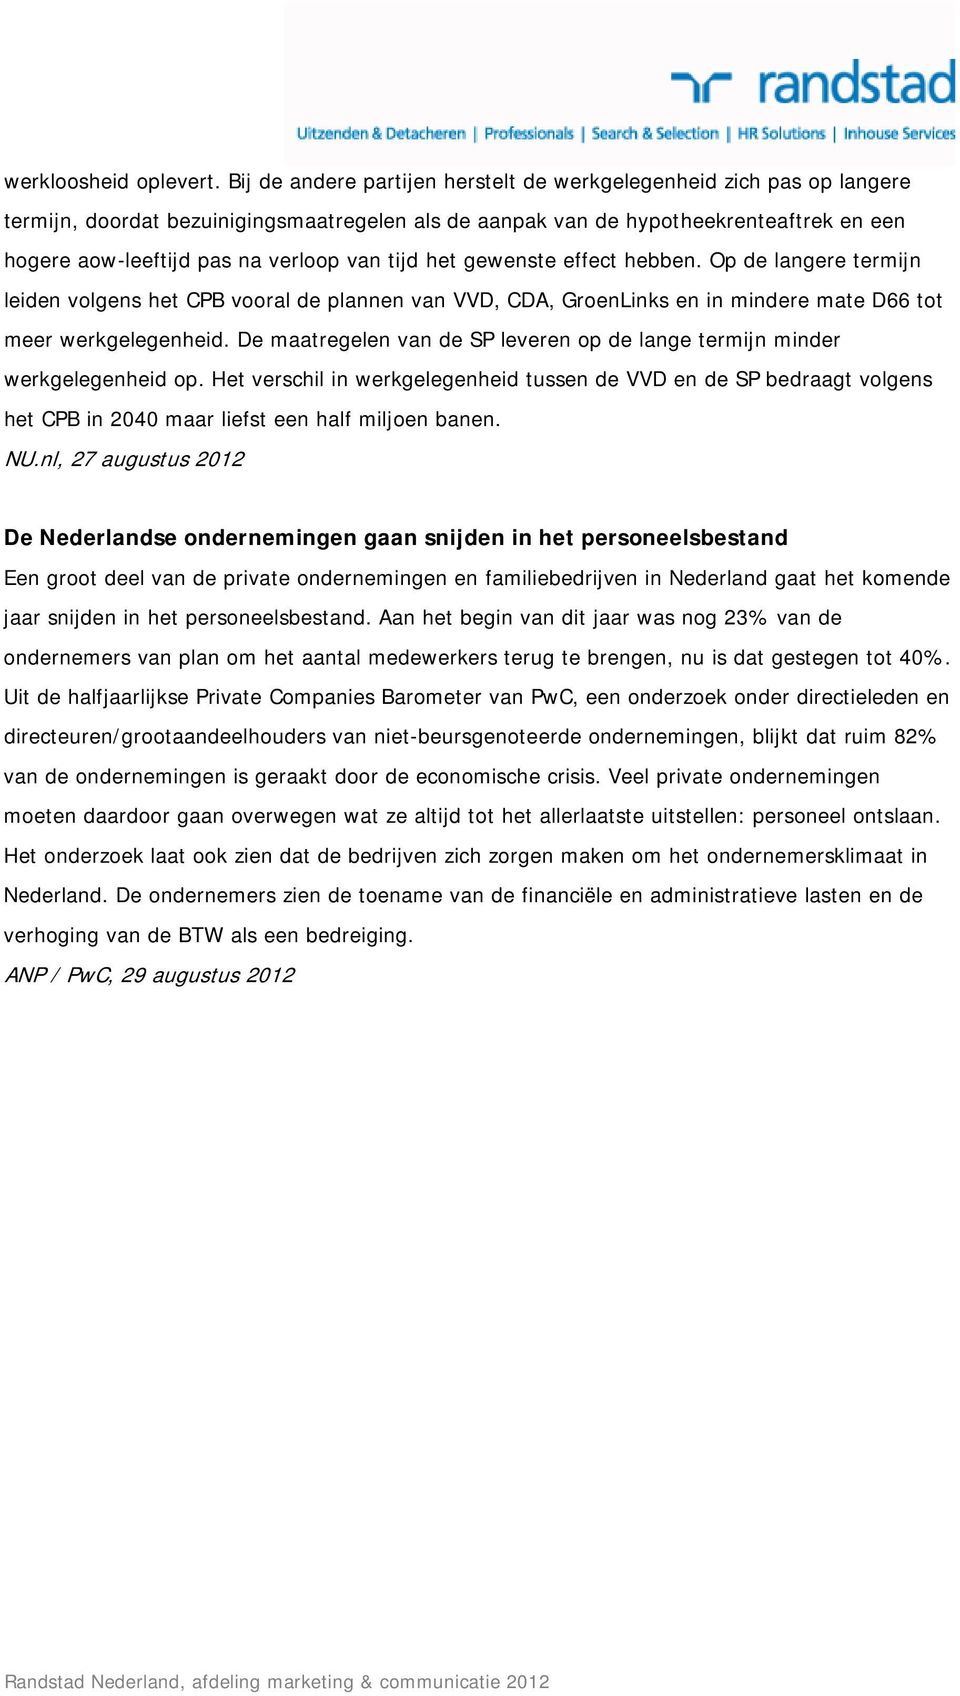 tijd het gewenste effect hebben. Op de langere termijn leiden volgens het CPB vooral de plannen van VVD, CDA, GroenLinks en in mindere mate D66 tot meer werkgelegenheid.